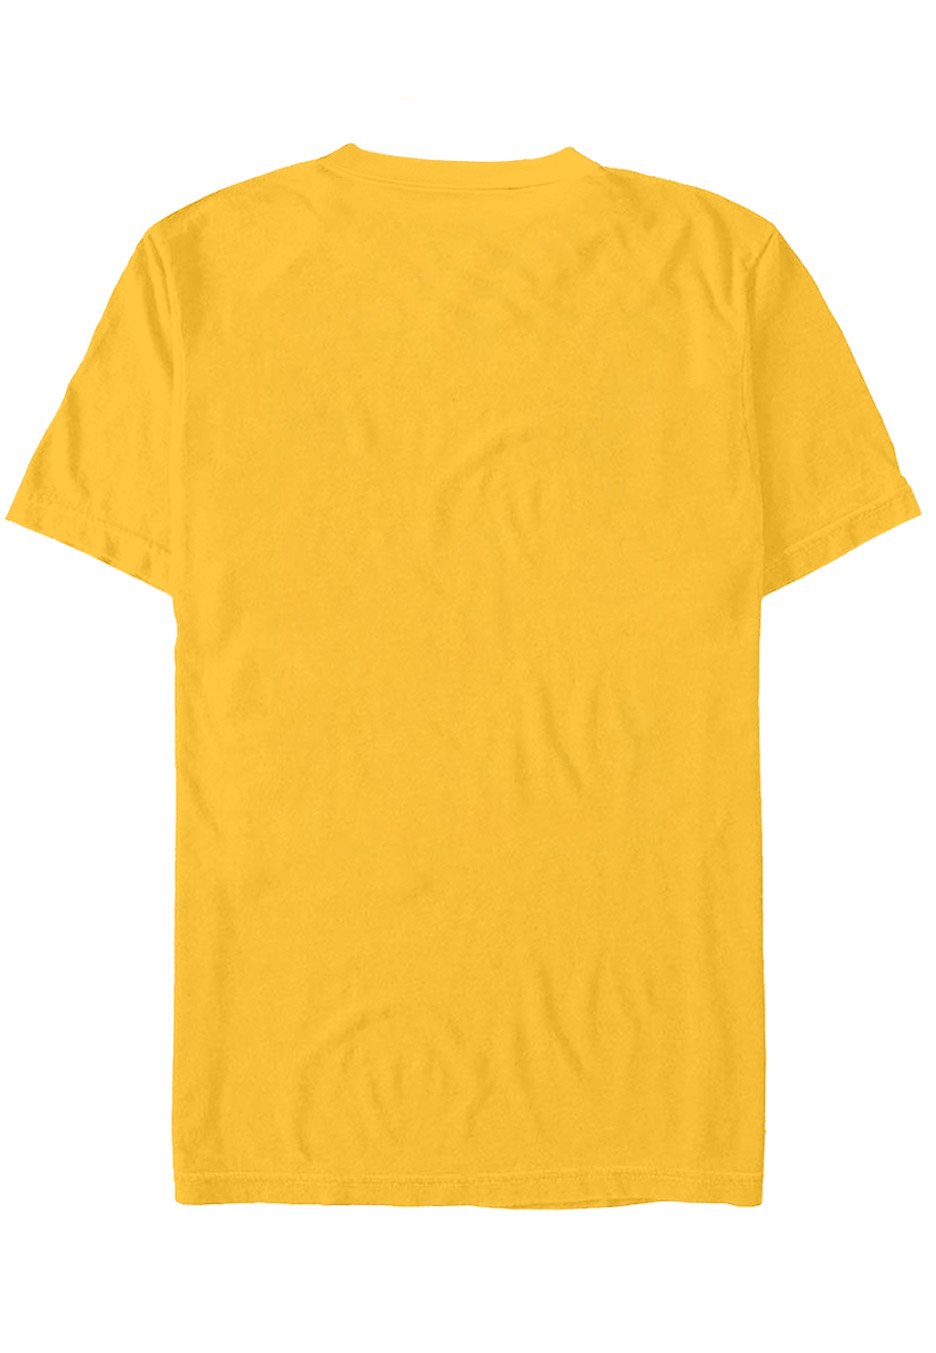 Thy Art Is Murder - Flame Logo Gold - T-Shirt